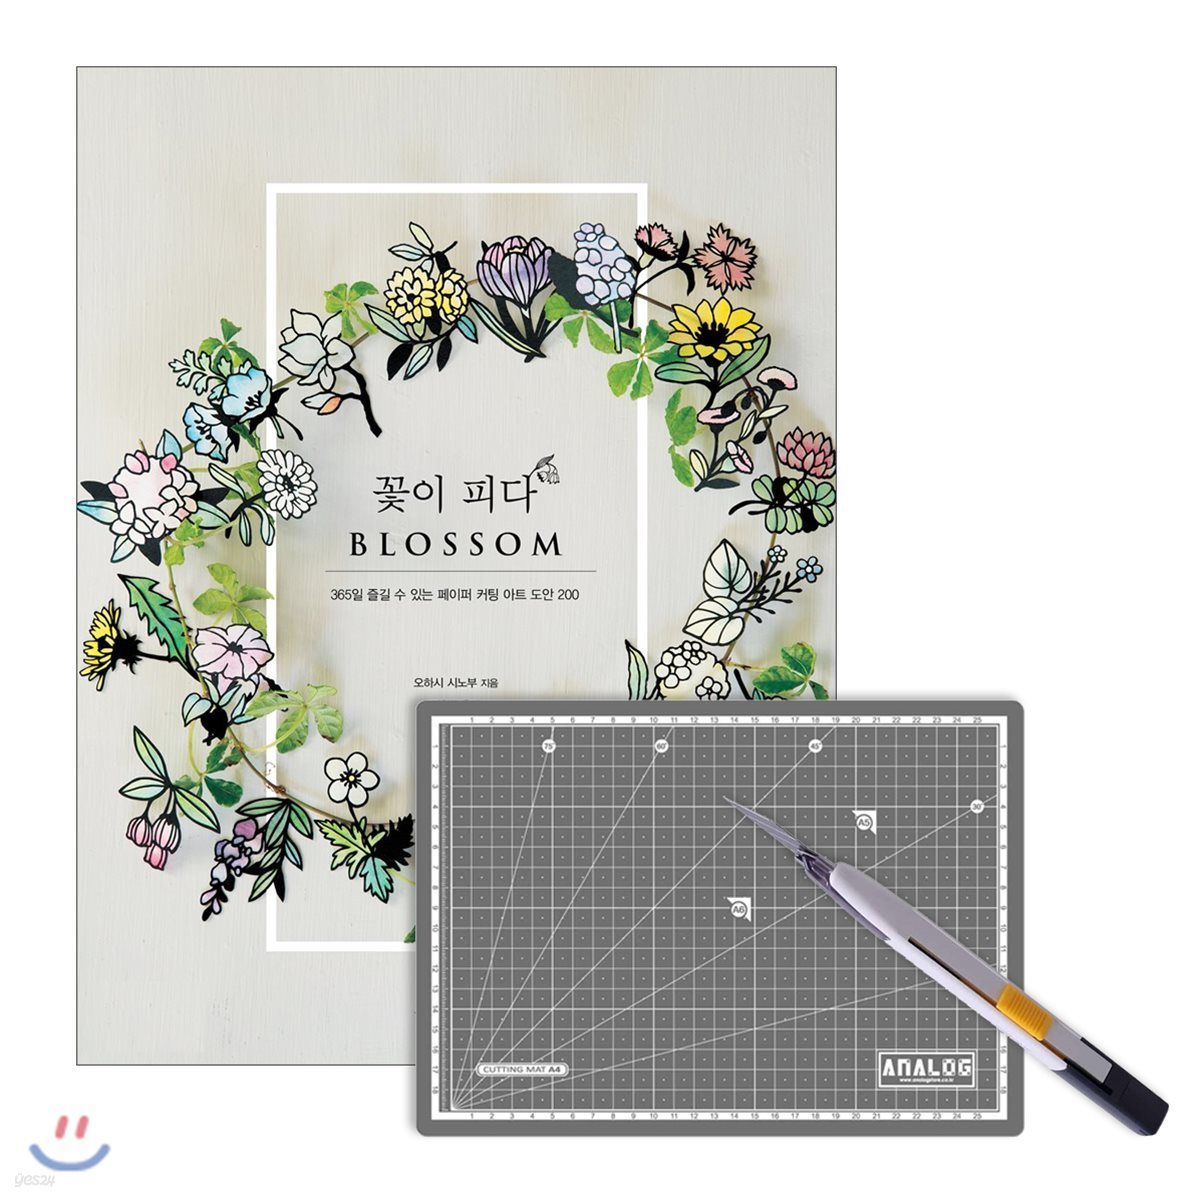 꽃이 피다 BLOSSOM + 키트 1 : 칼라커팅매트 A4 그레이 + 크롬커터